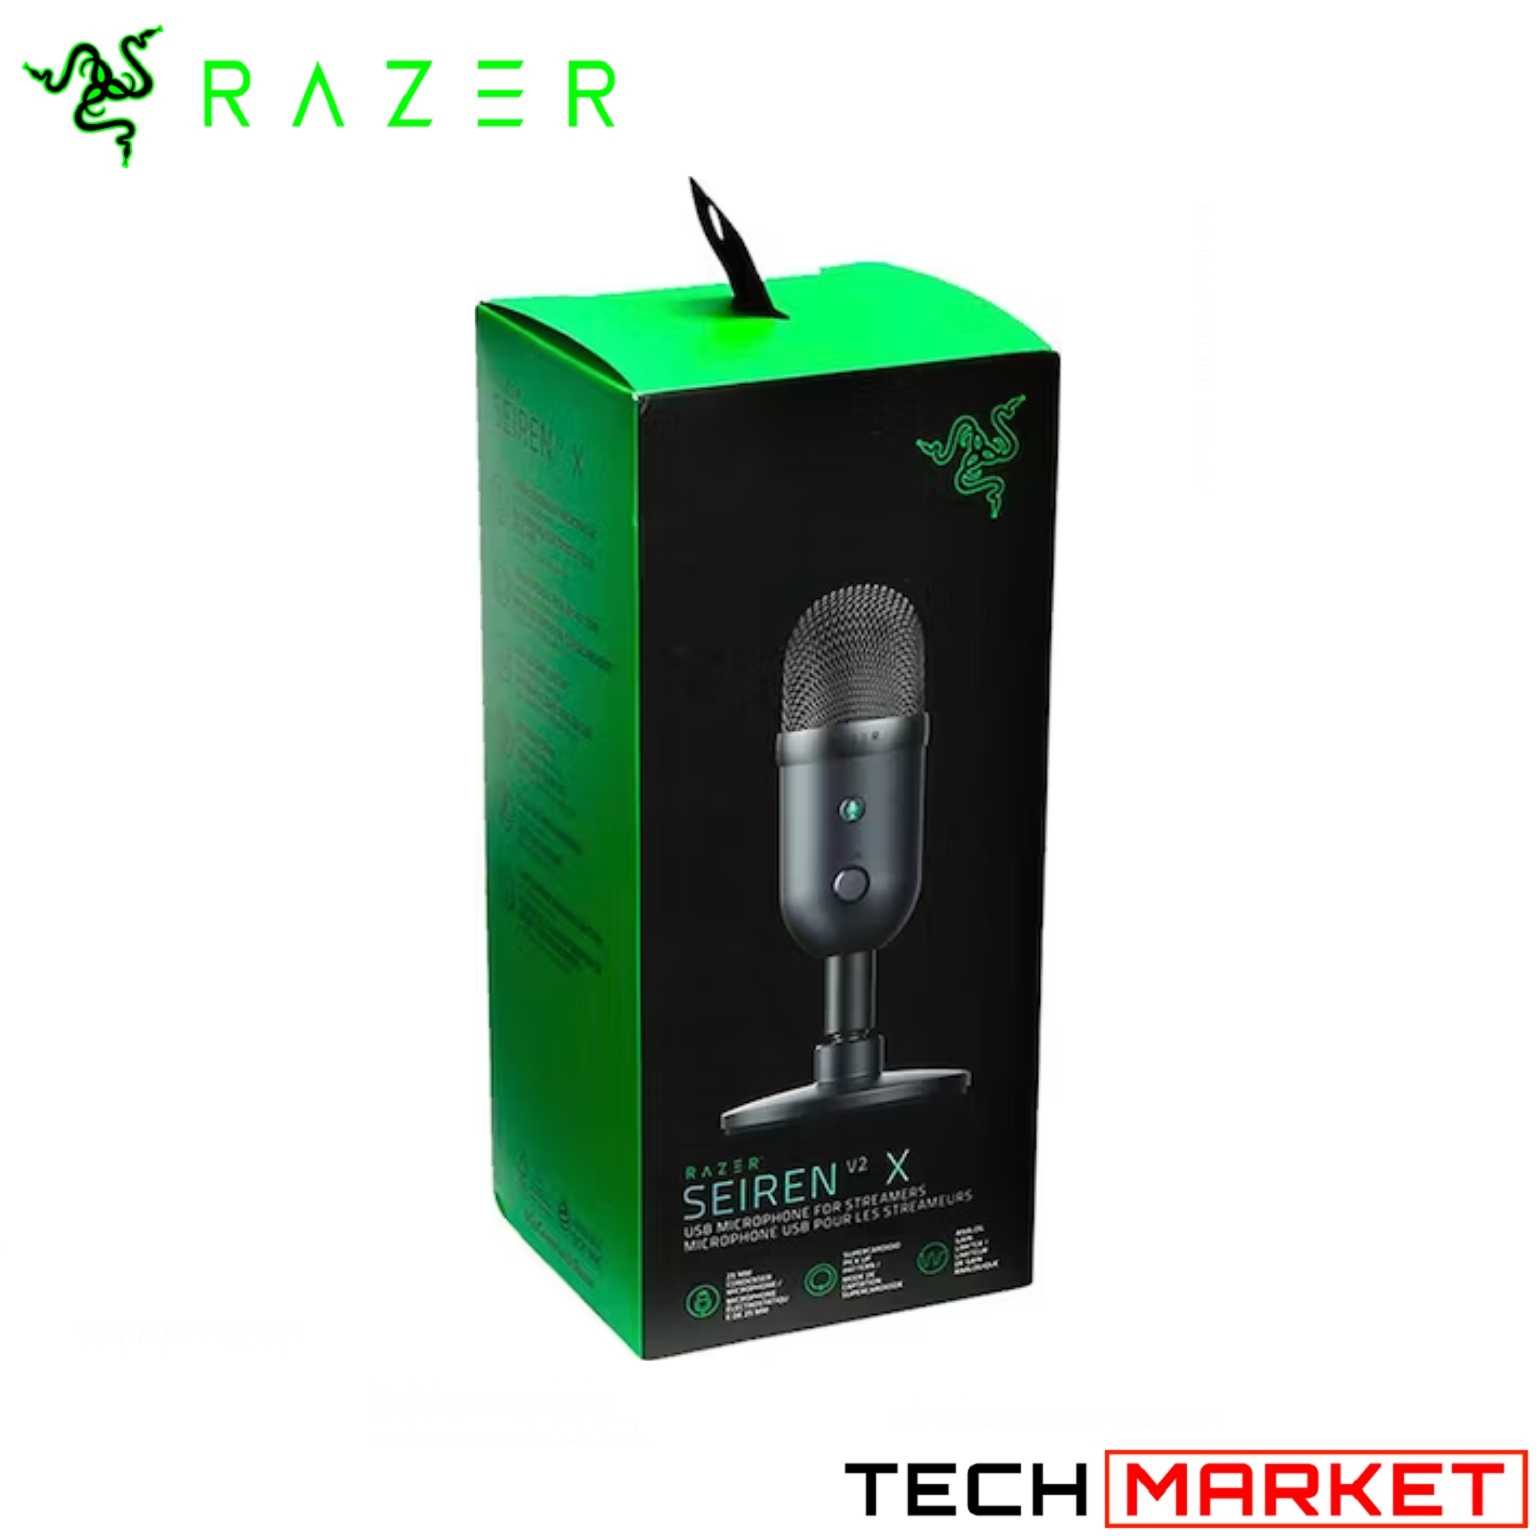 Micrófono USB Razer Seiren V2 X: Micrófono de condensador de 25 mm.